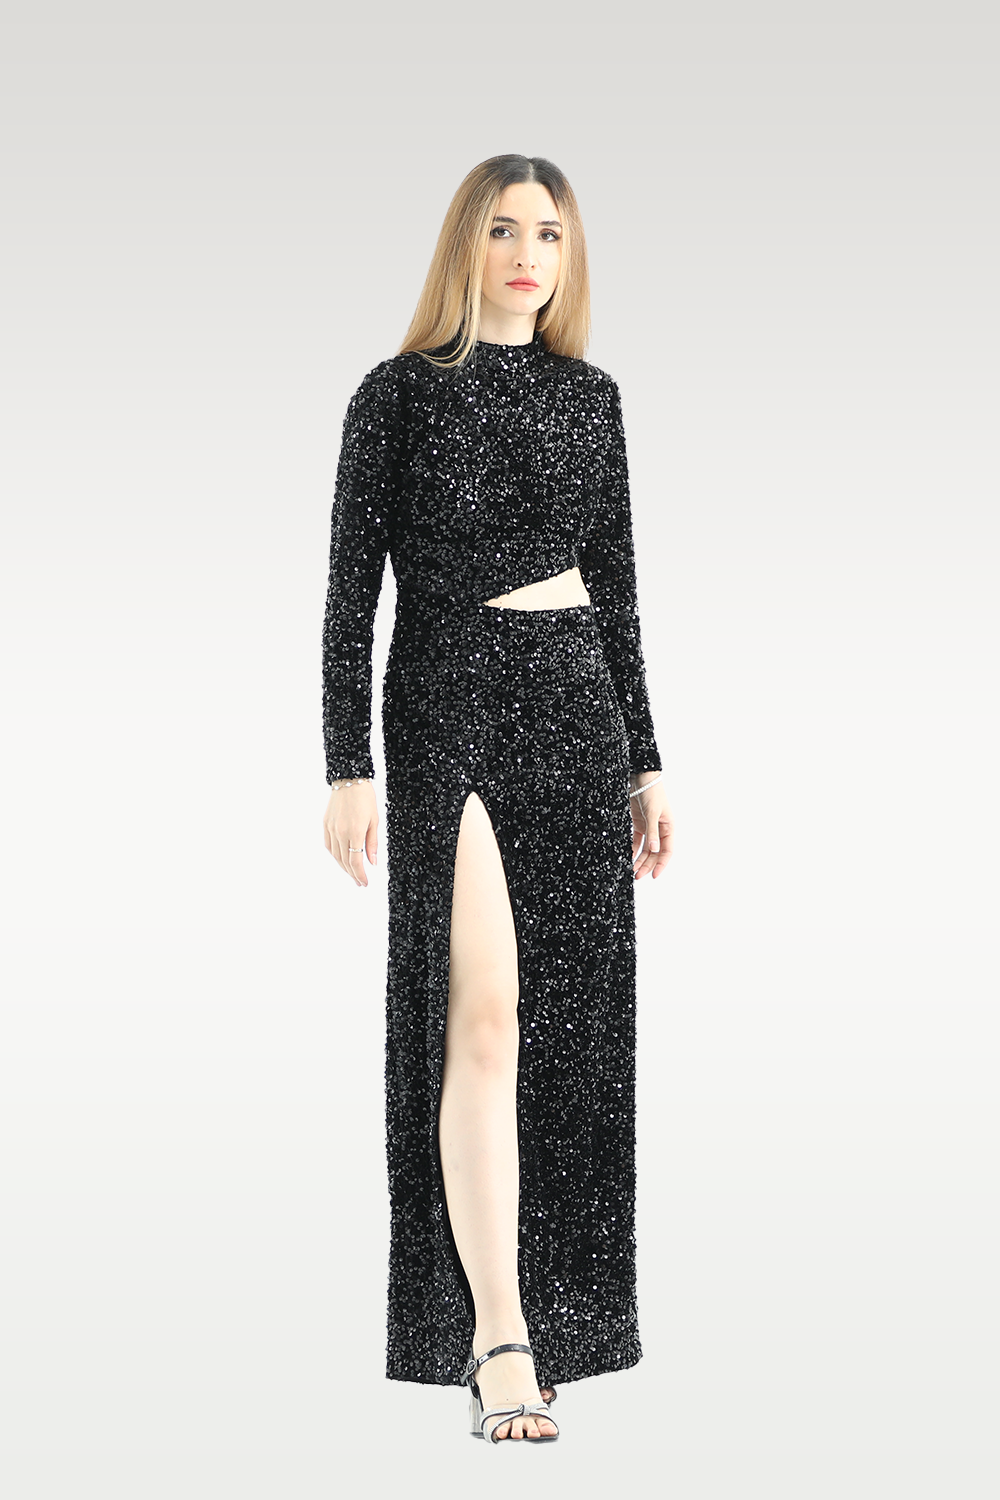 Alish Full Sleeve Black Designer Gown